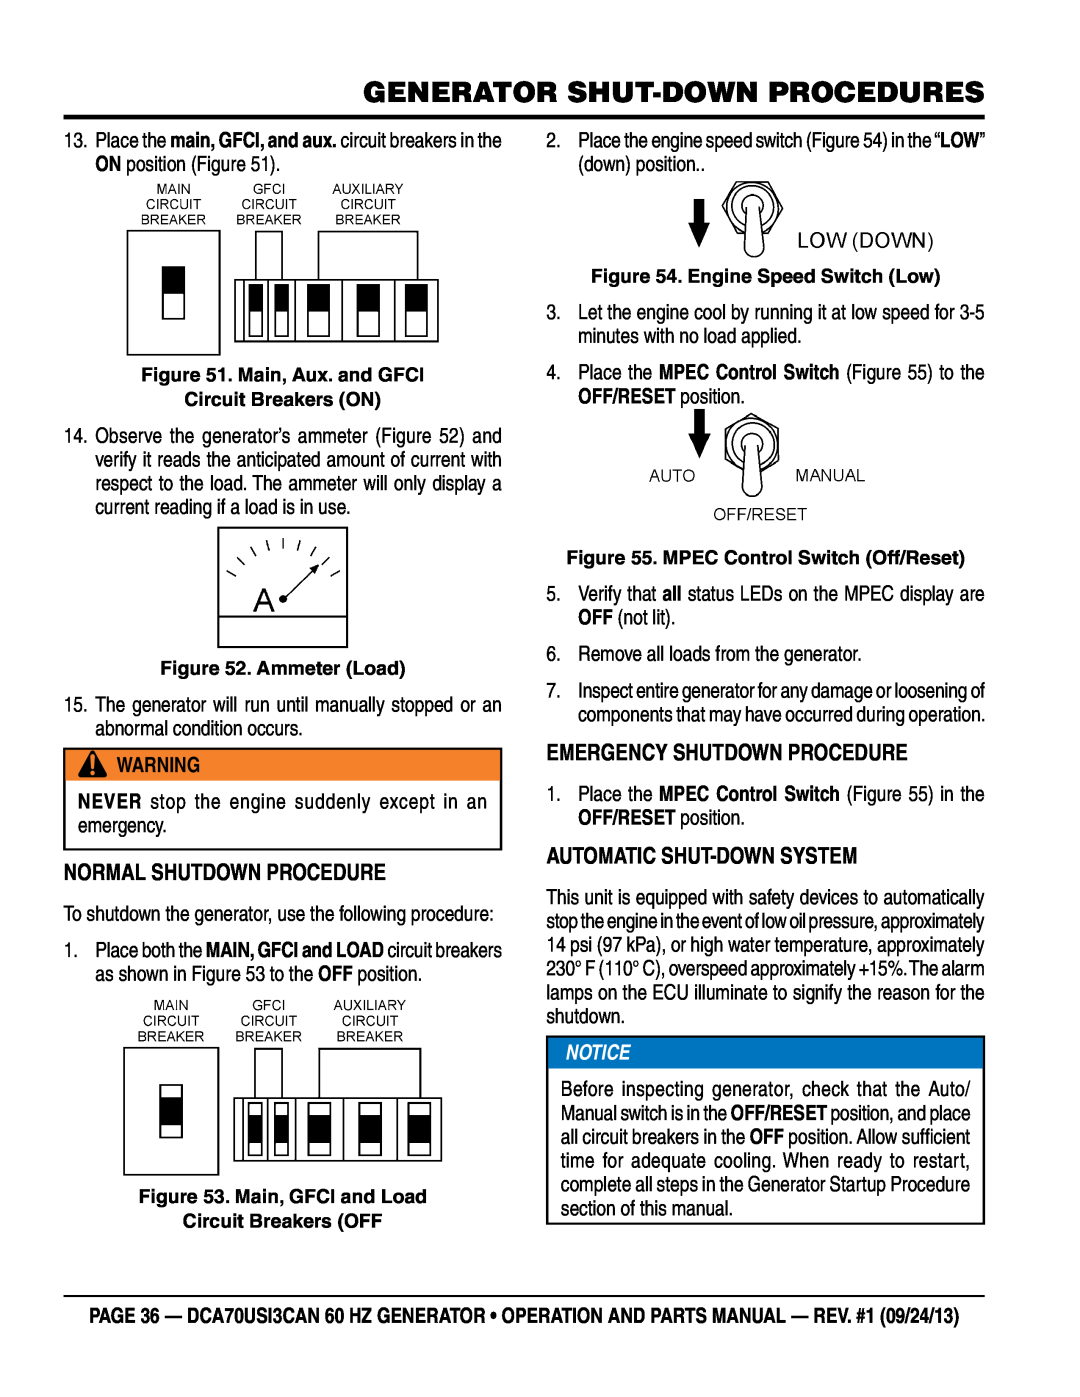 Multiquip DCA70US13CAN manual Generator Shut-Down Procedures, Normal Shutdown Procedure, Emergency Shutdown Procedure 